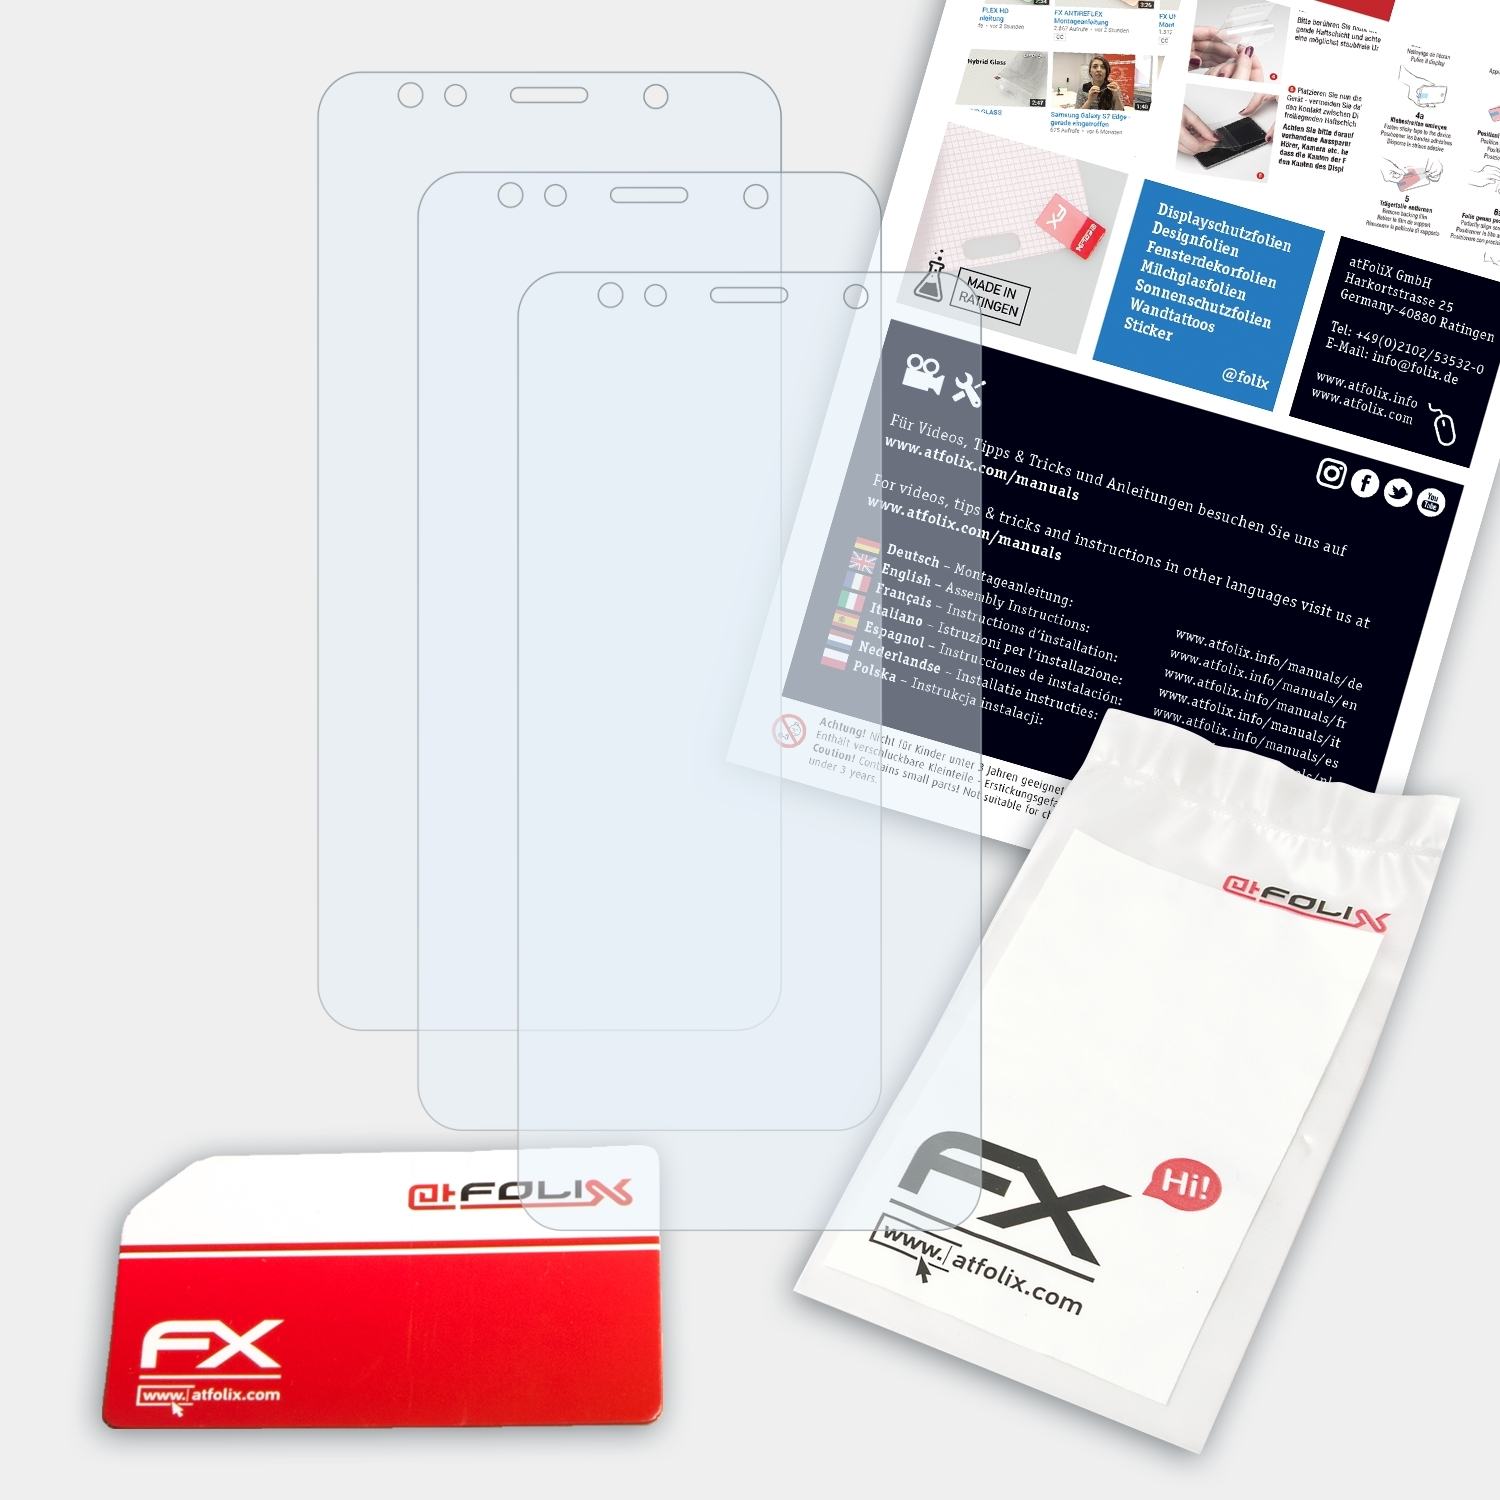 ATFOLIX 3x FX-Clear Displayschutz(für Gigaset GS180)